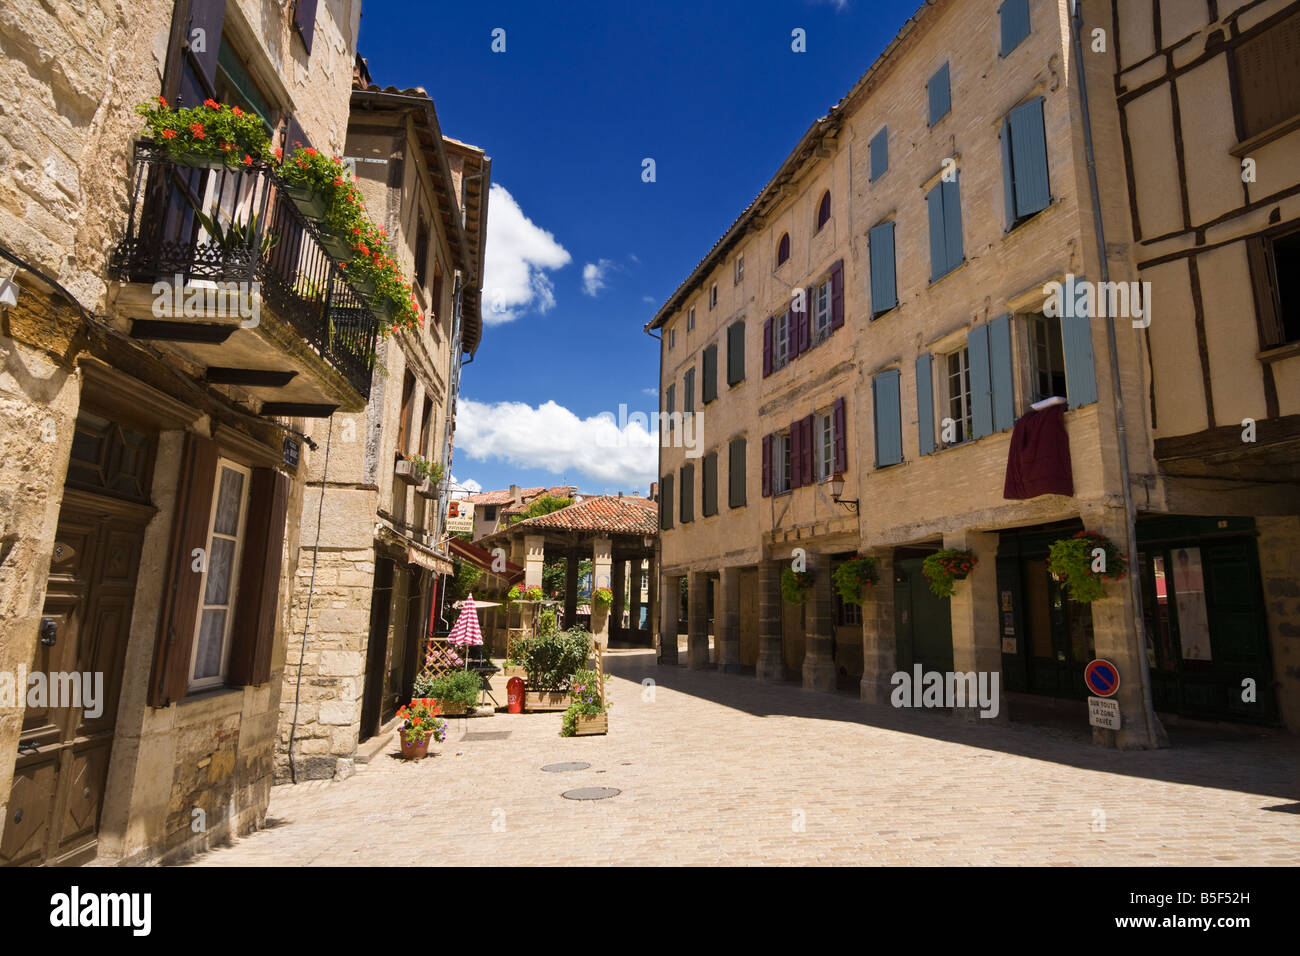 The medieval streets of St Antonin Noble Val, Tarn et Garonne, France Europe Stock Photo